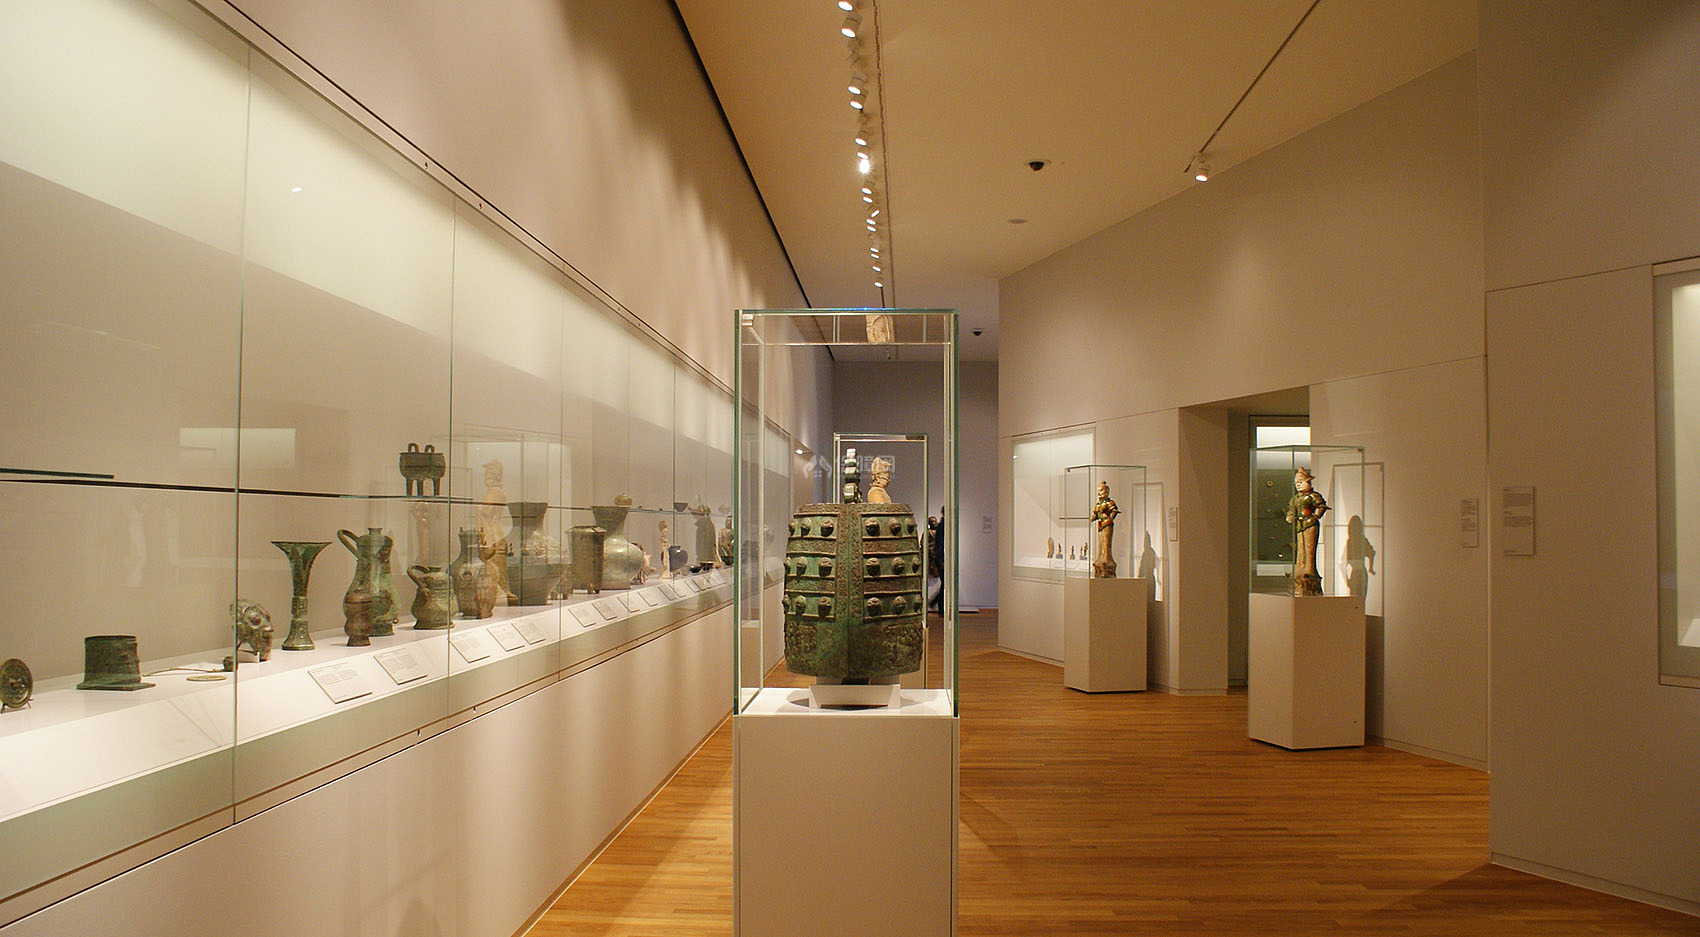 荷兰国家博物馆亚洲展馆之地下层玻璃展示柜设计效果图